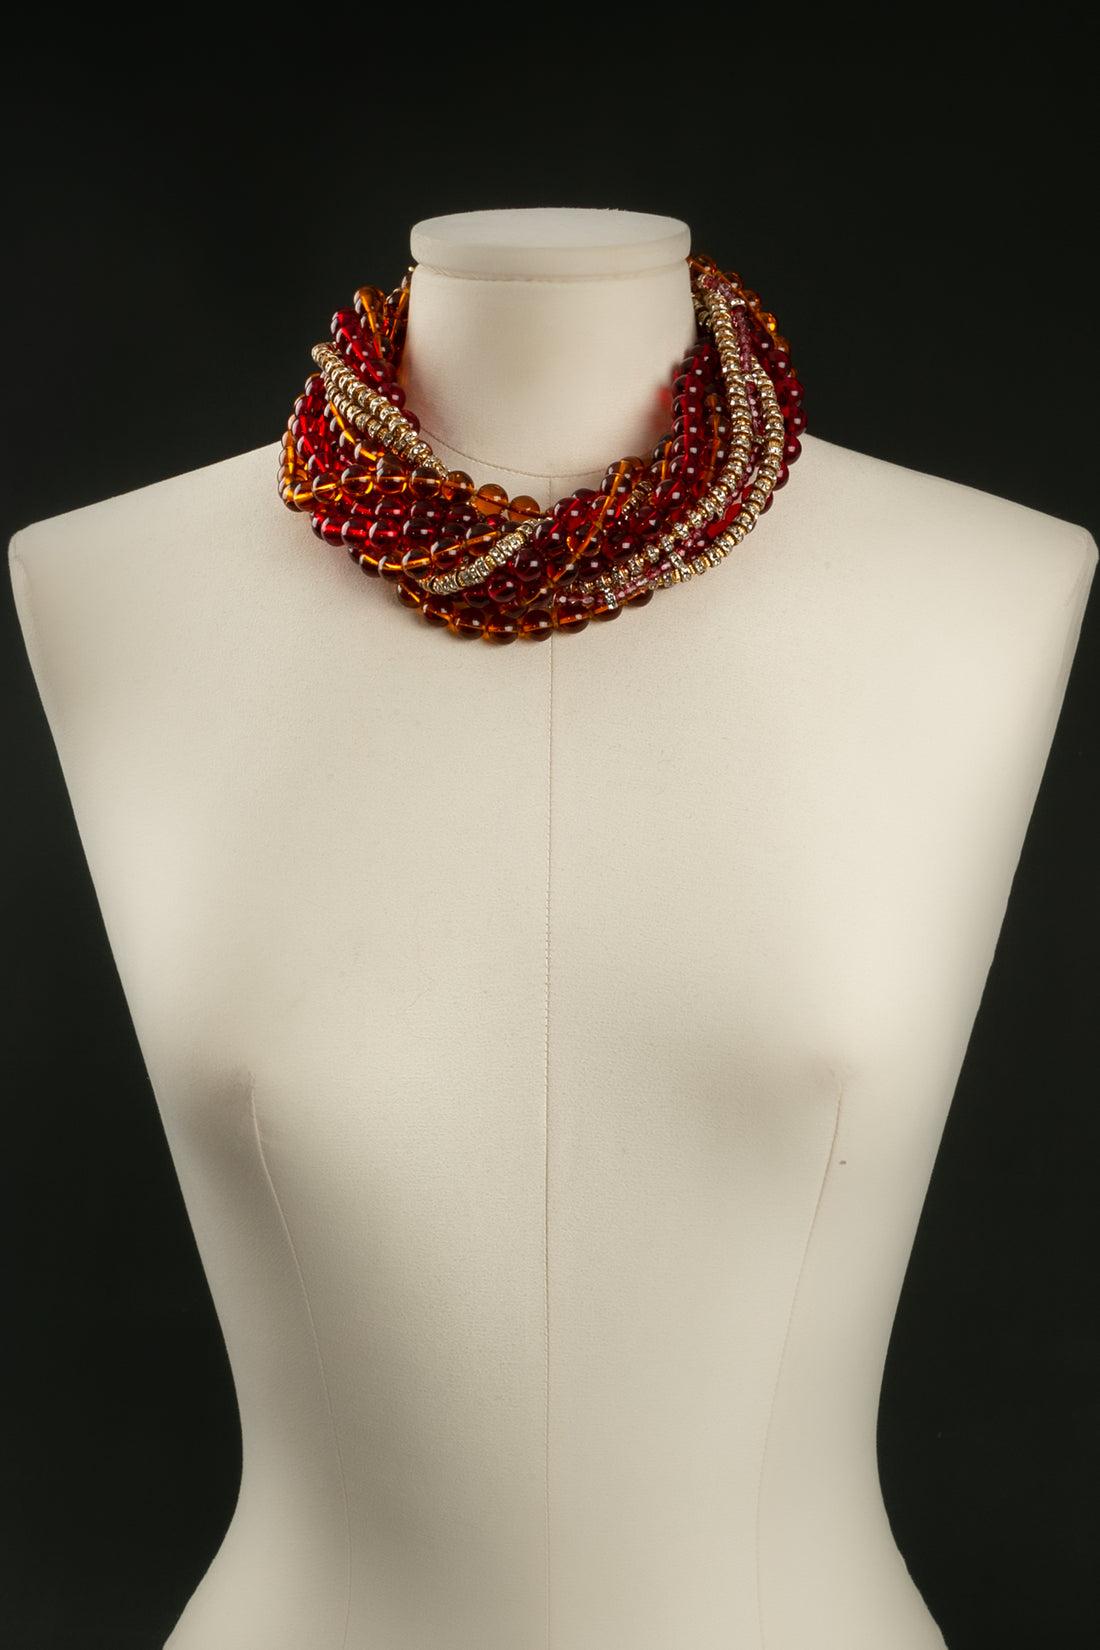 Christian Dior - Kurze Halskette aus vergoldetem Metall, bestehend aus Glasperlen in Rot- und Orangetönen mit Zwischenstücken. Der Verschluss ist aus durchbrochenem, vergoldetem Metall und mit Strasssteinen besetzt.

Zusätzliche Informationen: